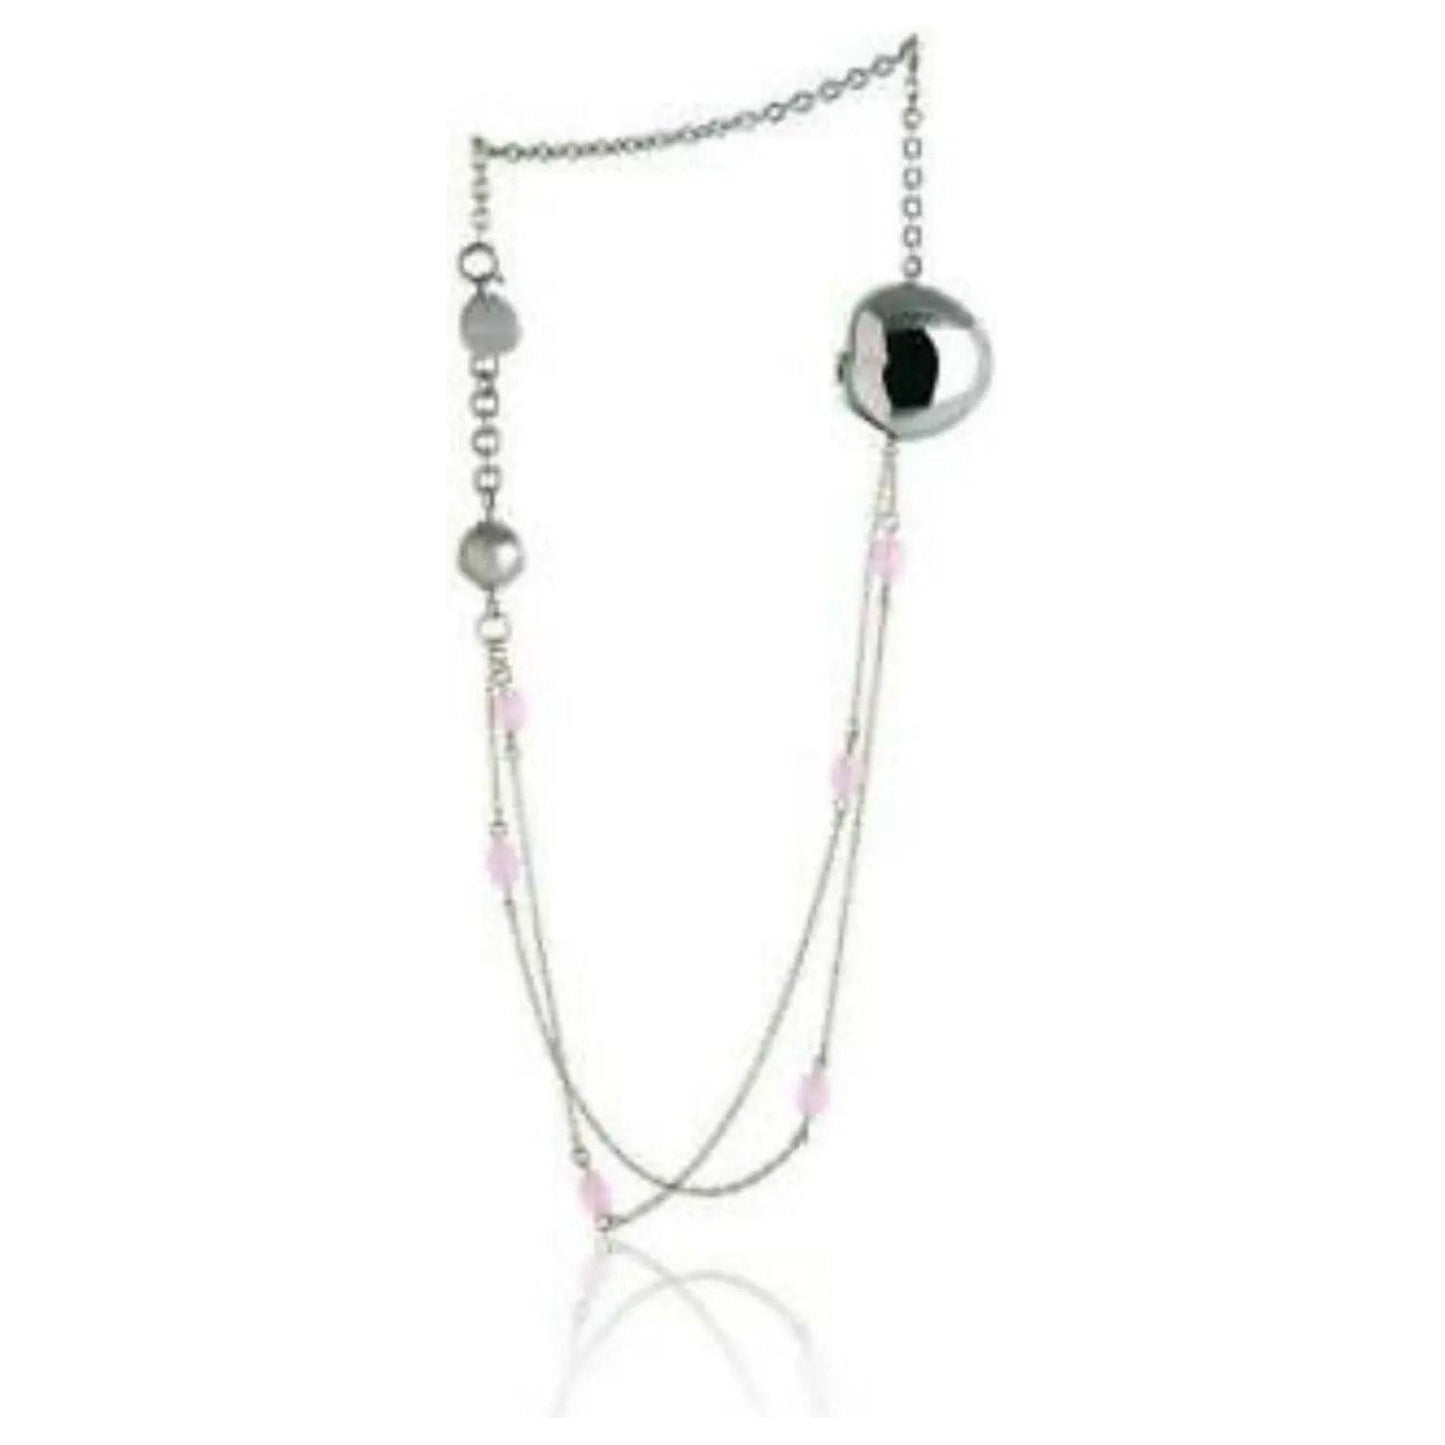 WOMAN BRACELET BREIL JEWELS BLOOM Collection- 2 in 1 : Bracciale - Collana / Bracelet - Necklace 19cm BREIL GIOIELLI